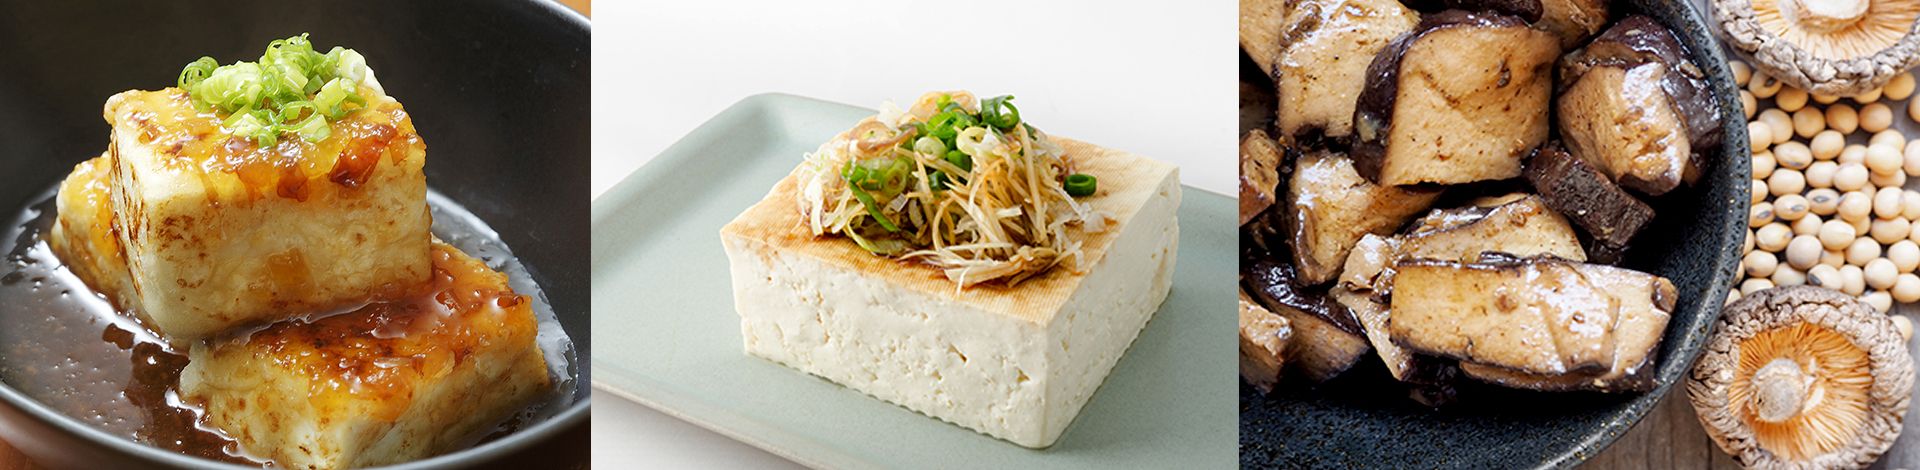 Pressa per stampi di tofu, Pressa per tofu, macchina per pressare e modellare il tofu, macchina per alimenti